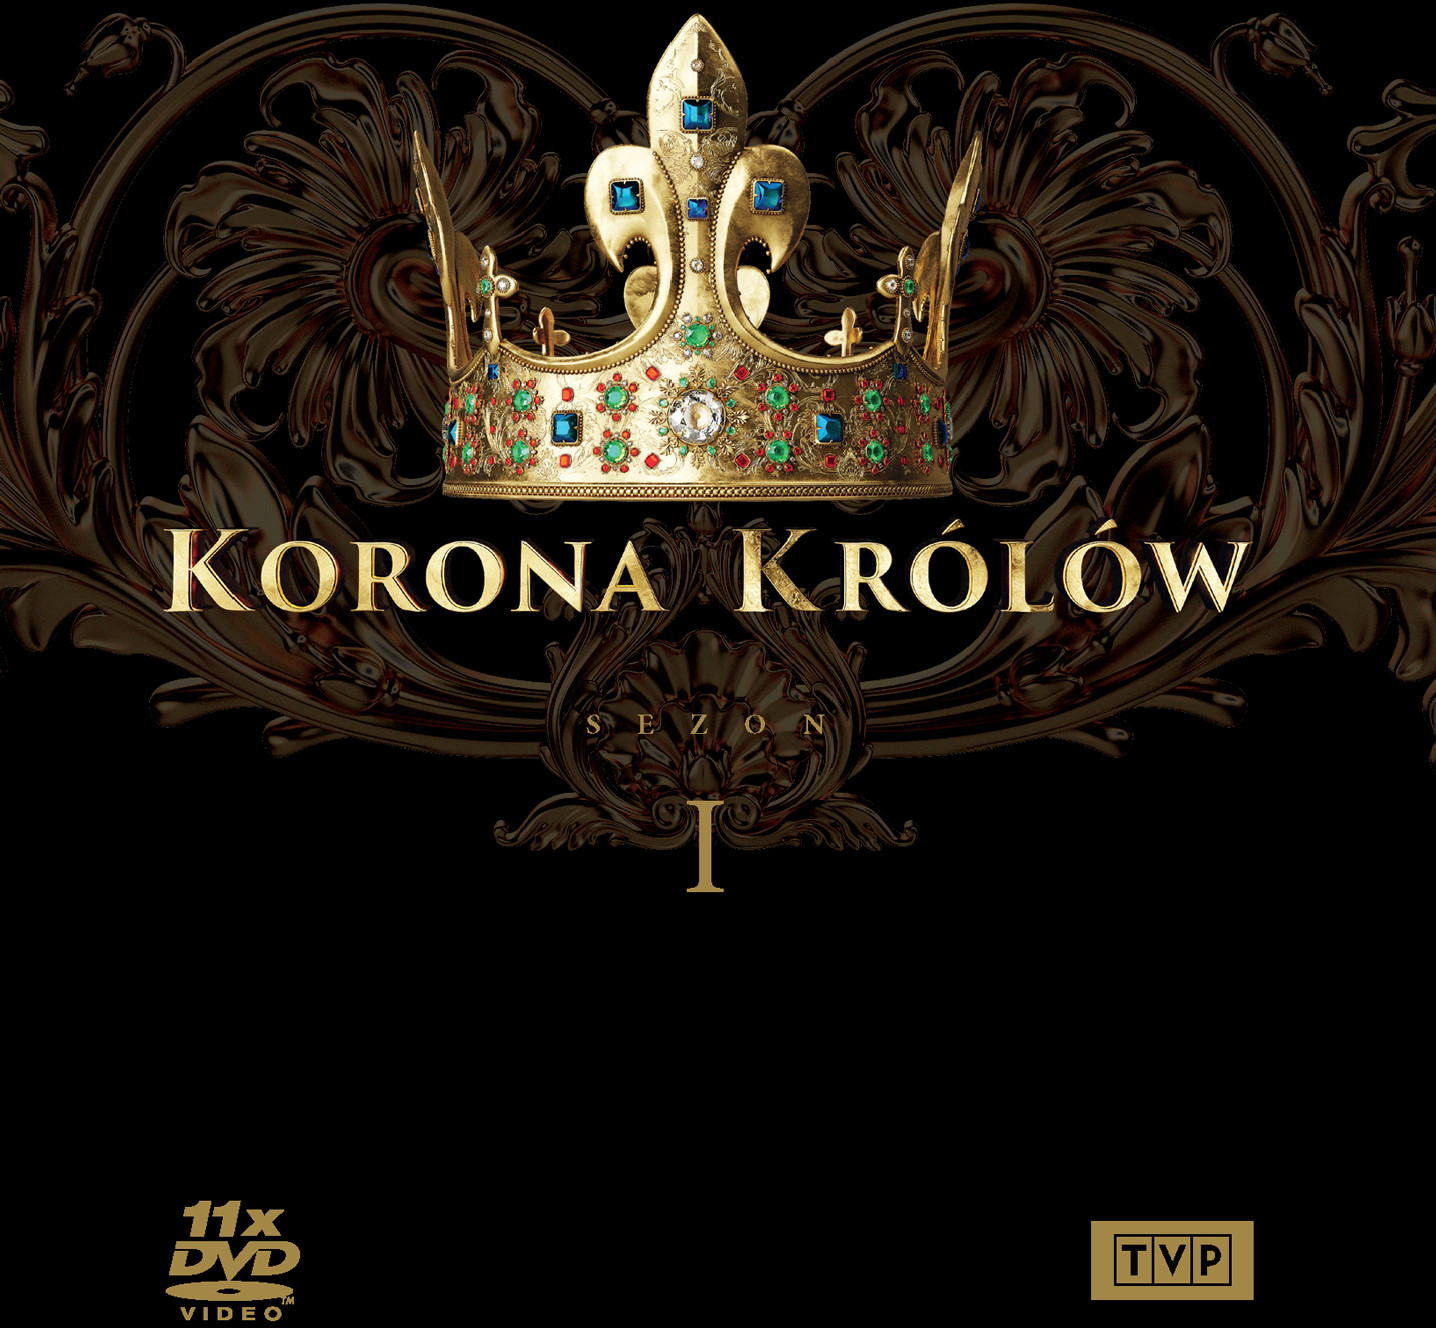 Korona królów Sezon 1 11 DVD)